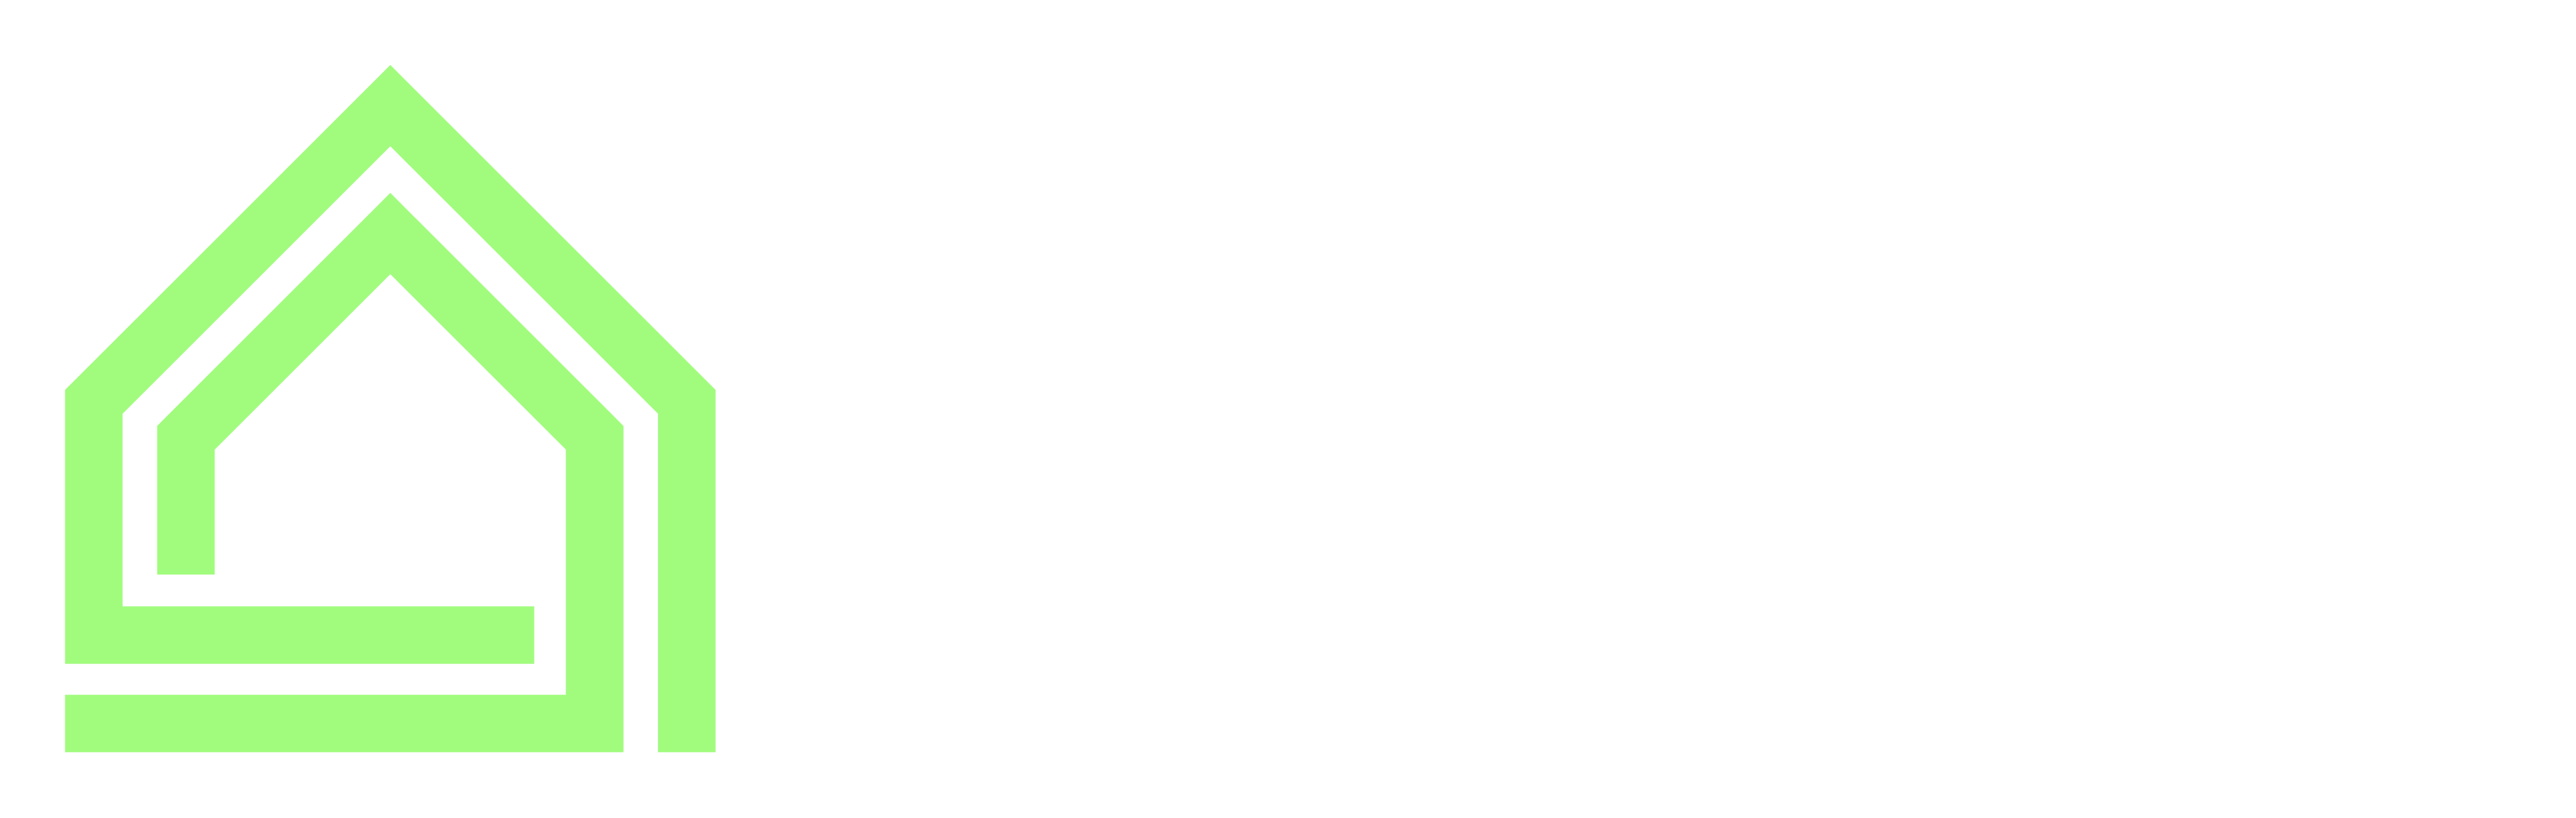 HMR Home Remodeling Logo